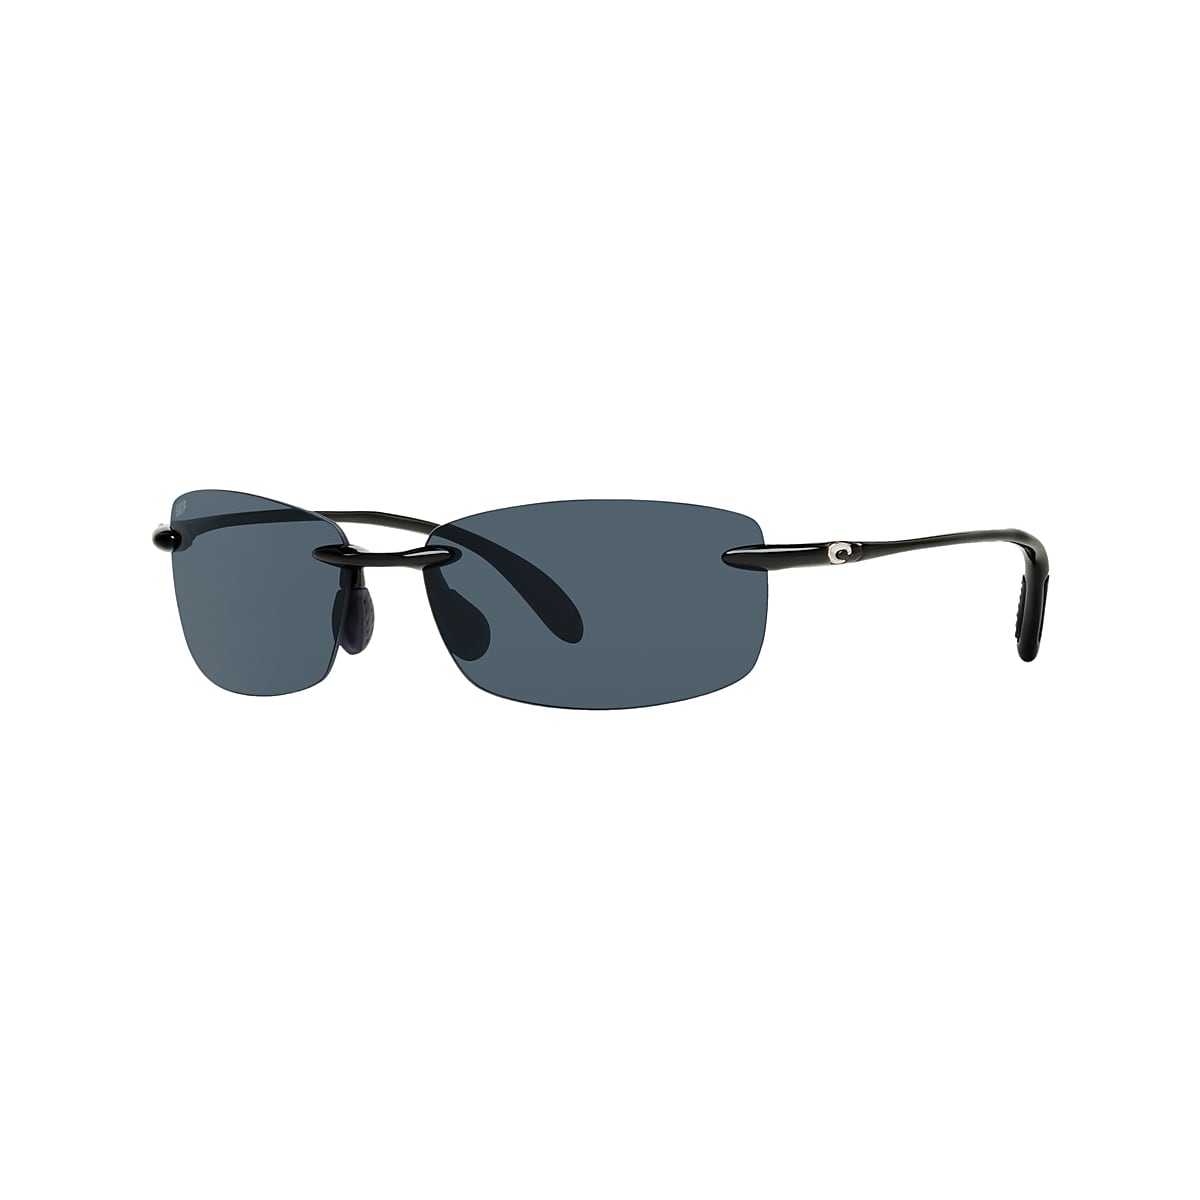 M COSTA DEL MAR black//gray /"BALLAST/" POLARIZED 580P sunglasses NEW IN BOX!